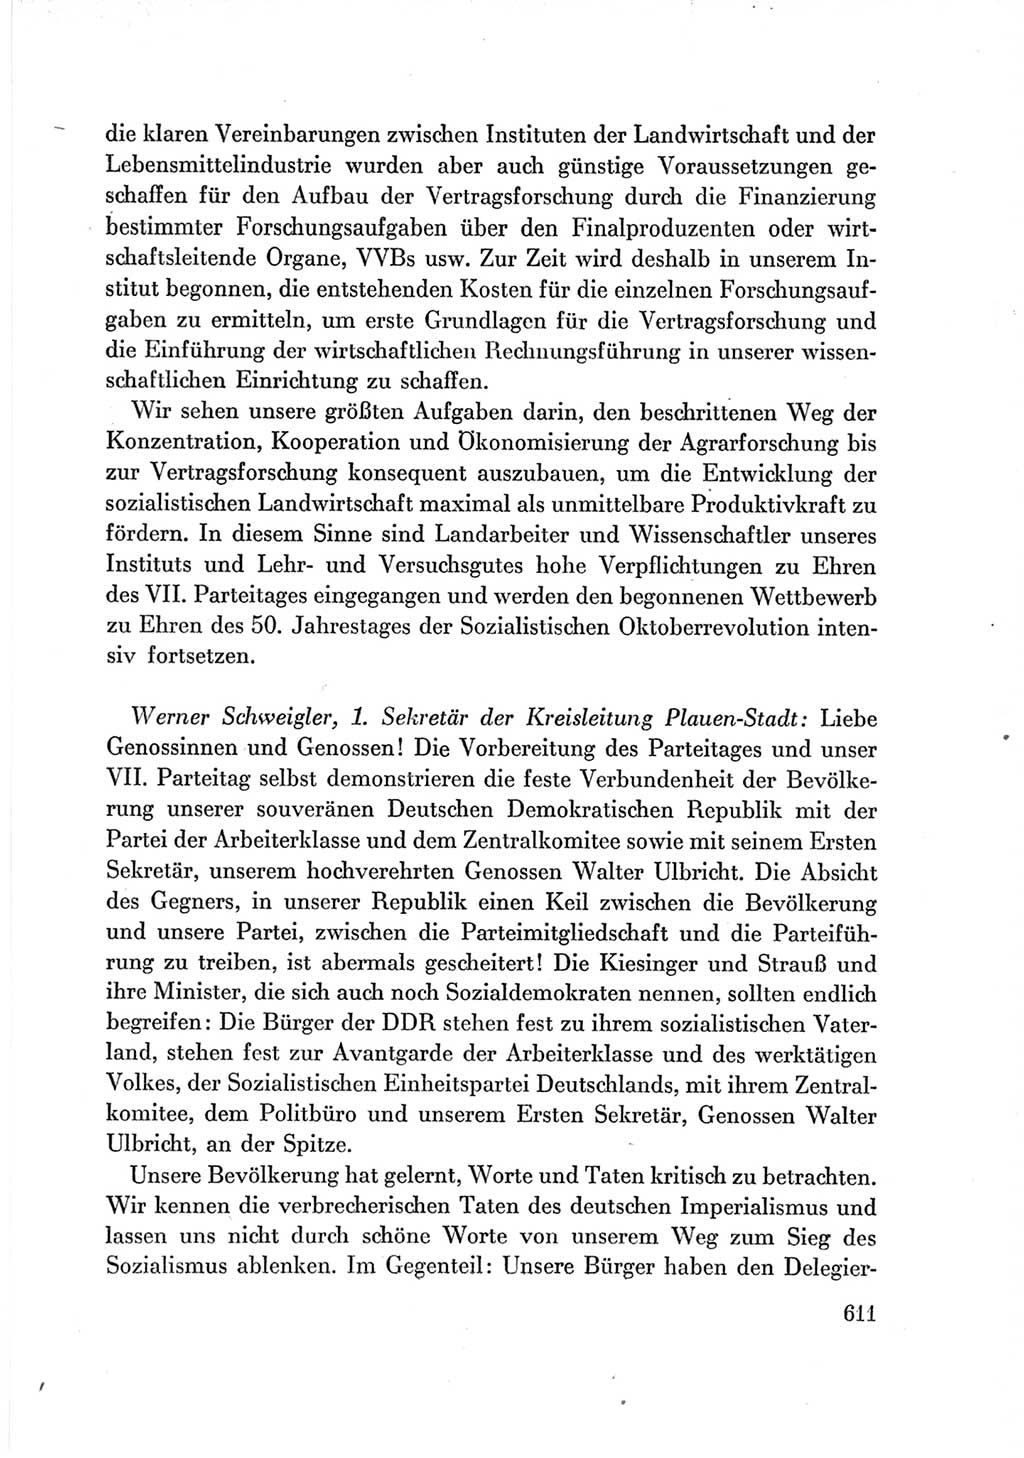 Protokoll der Verhandlungen des Ⅶ. Parteitages der Sozialistischen Einheitspartei Deutschlands (SED) [Deutsche Demokratische Republik (DDR)] 1967, Band Ⅲ, Seite 611 (Prot. Verh. Ⅶ. PT SED DDR 1967, Bd. Ⅲ, S. 611)